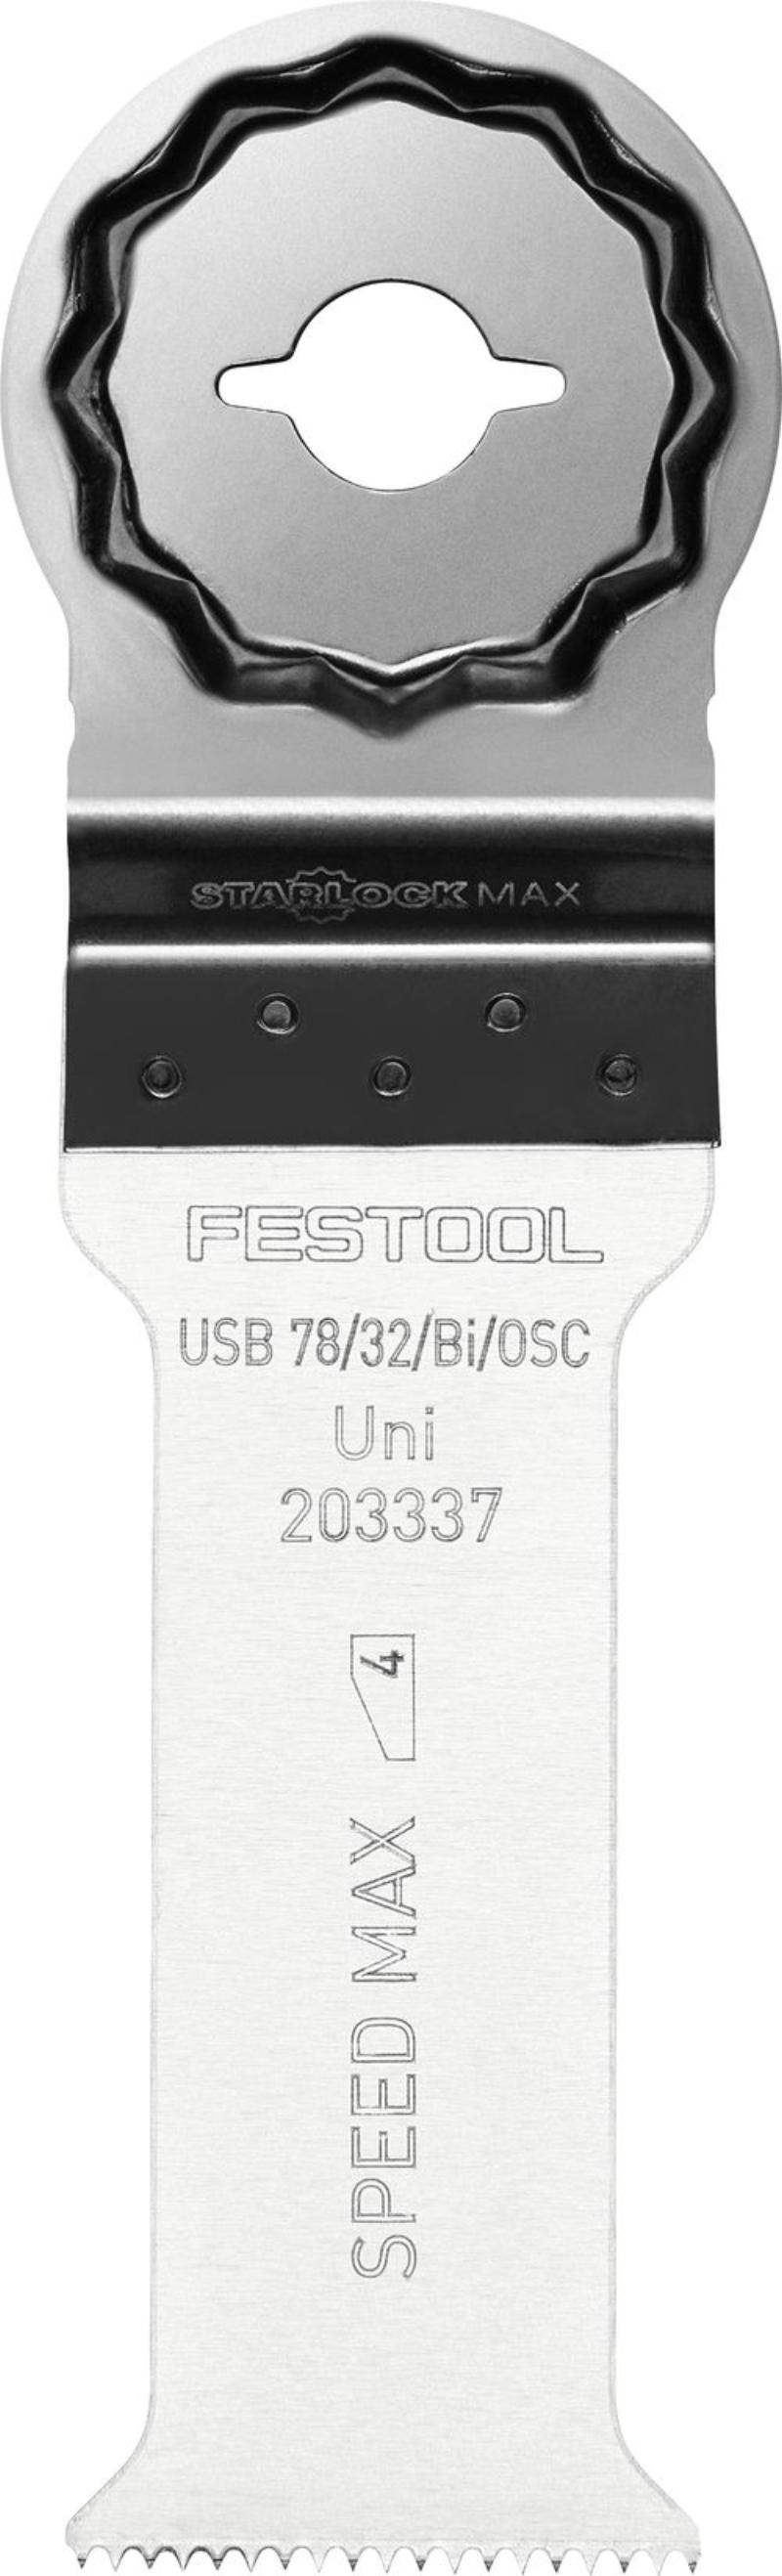 Festool Universalsågblad USB 78/32/Bi/OSC, 1 st